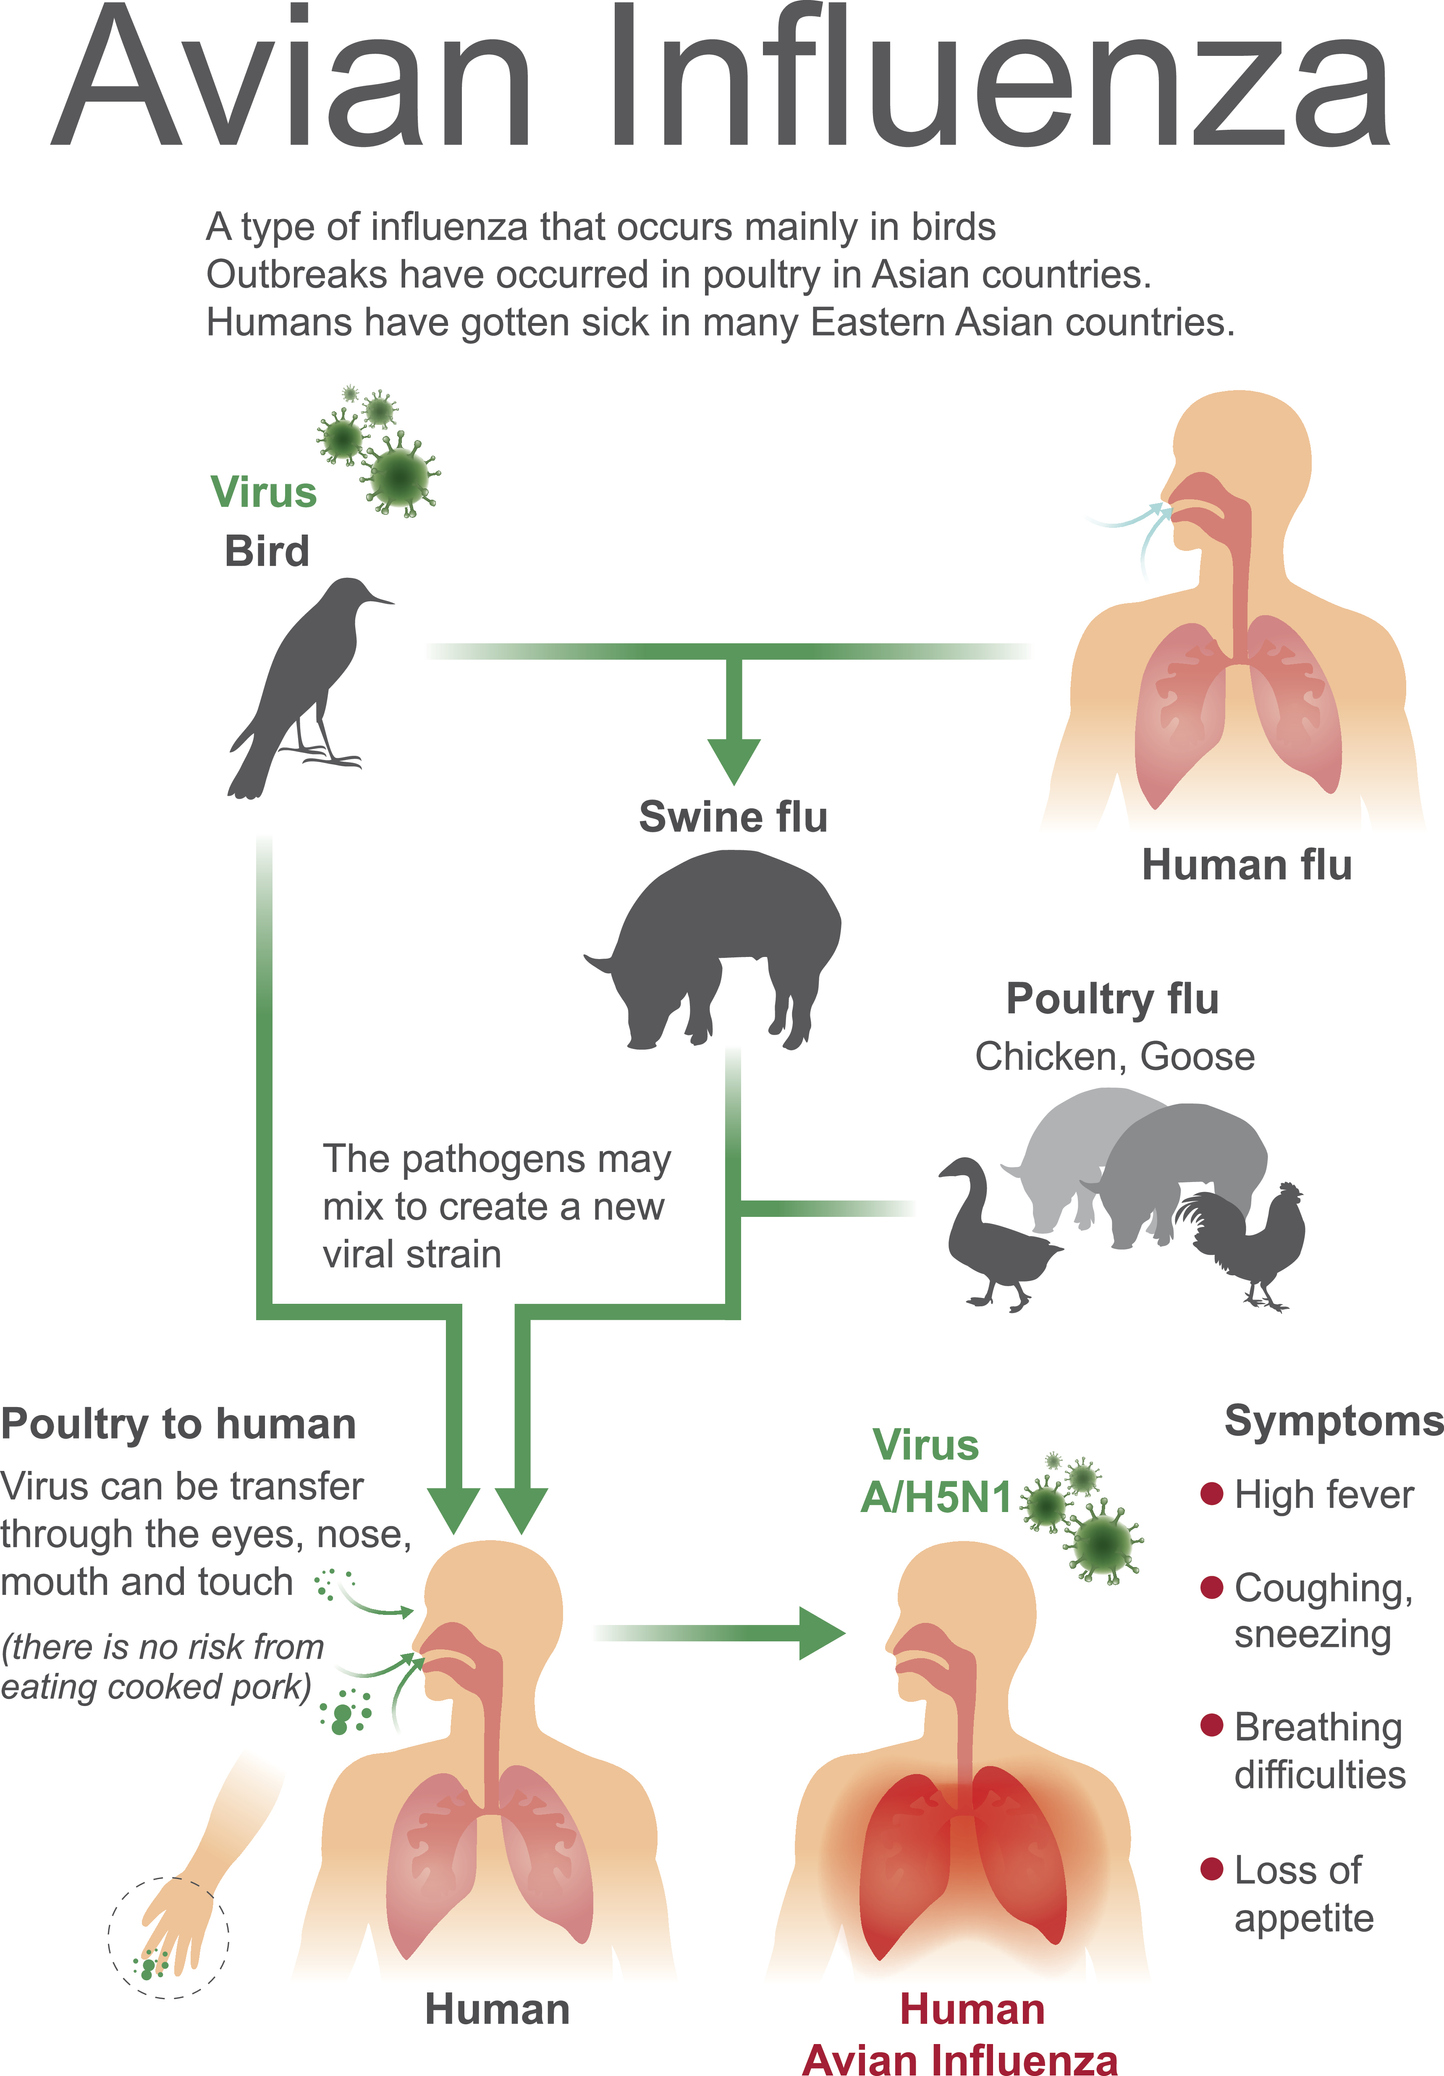 Zdroj a cesta nákazy vtáčej chrípky. Vtáctvo/hydina a prenos na iné zviera alebo človeka. Príznaky vtačej chrípky u človeka: zvýšená teplota, nechutenstvo, kašeľ, zhoršené dýchanie a nádcha